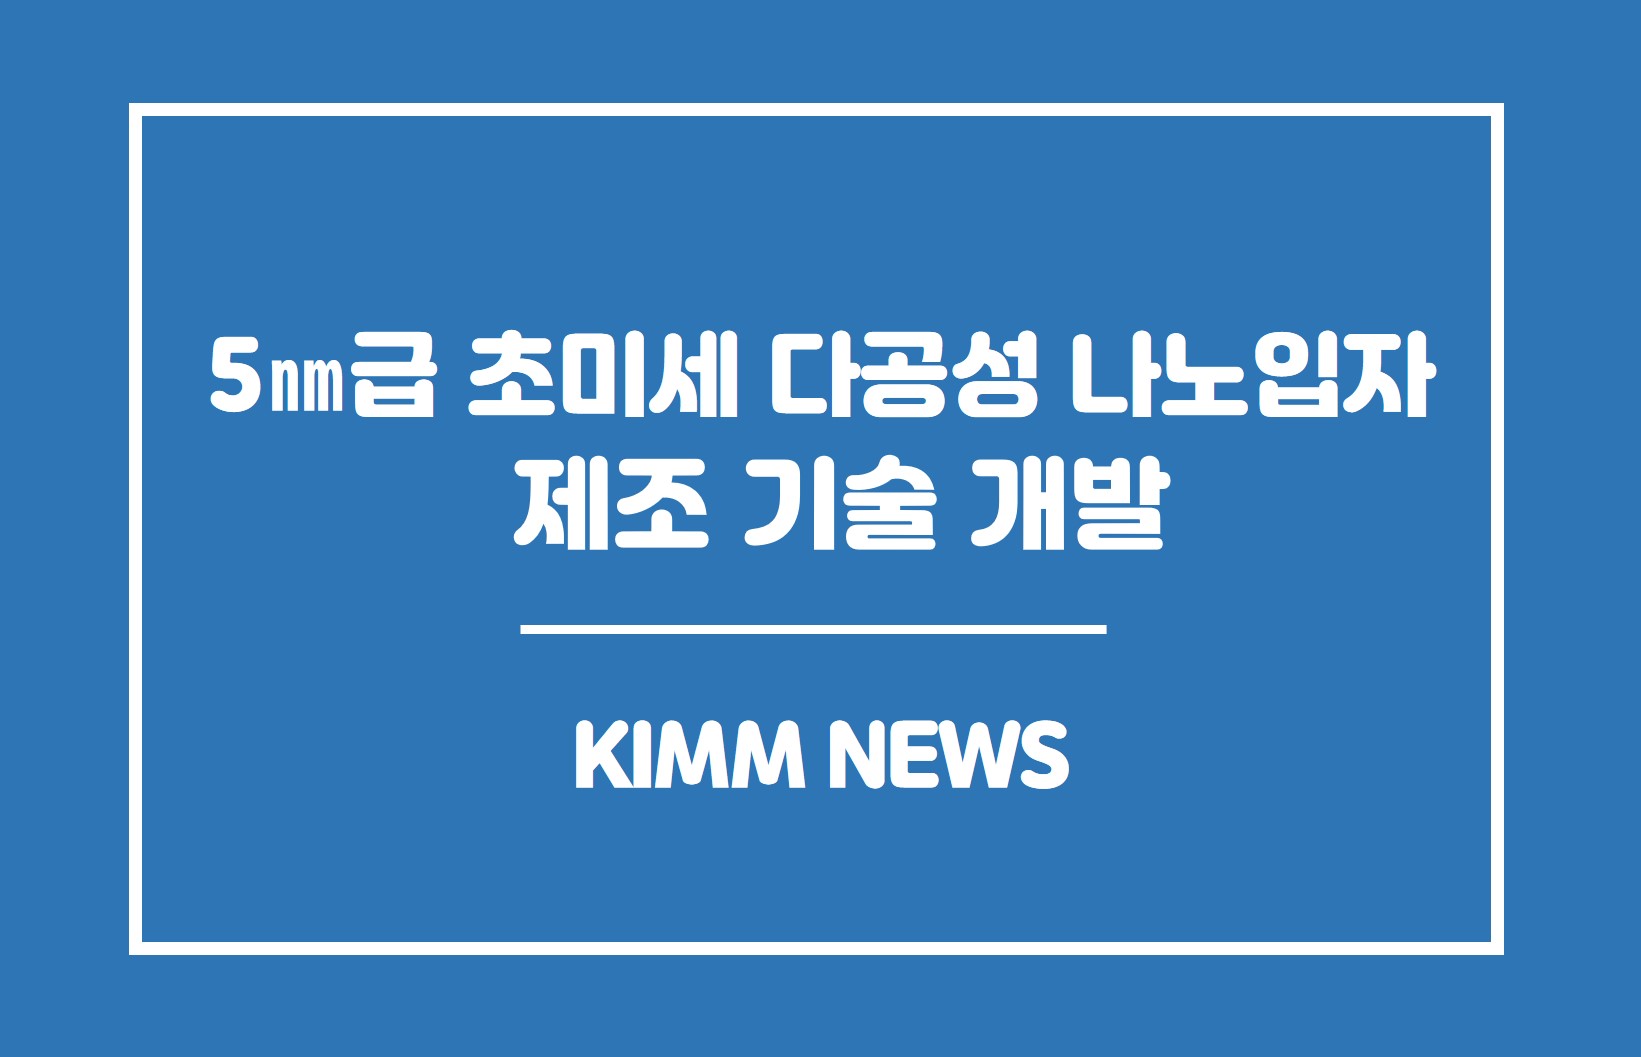 5nm급 초미세 다공성 나노입자 제조 기술 개발.KIMM NEWS